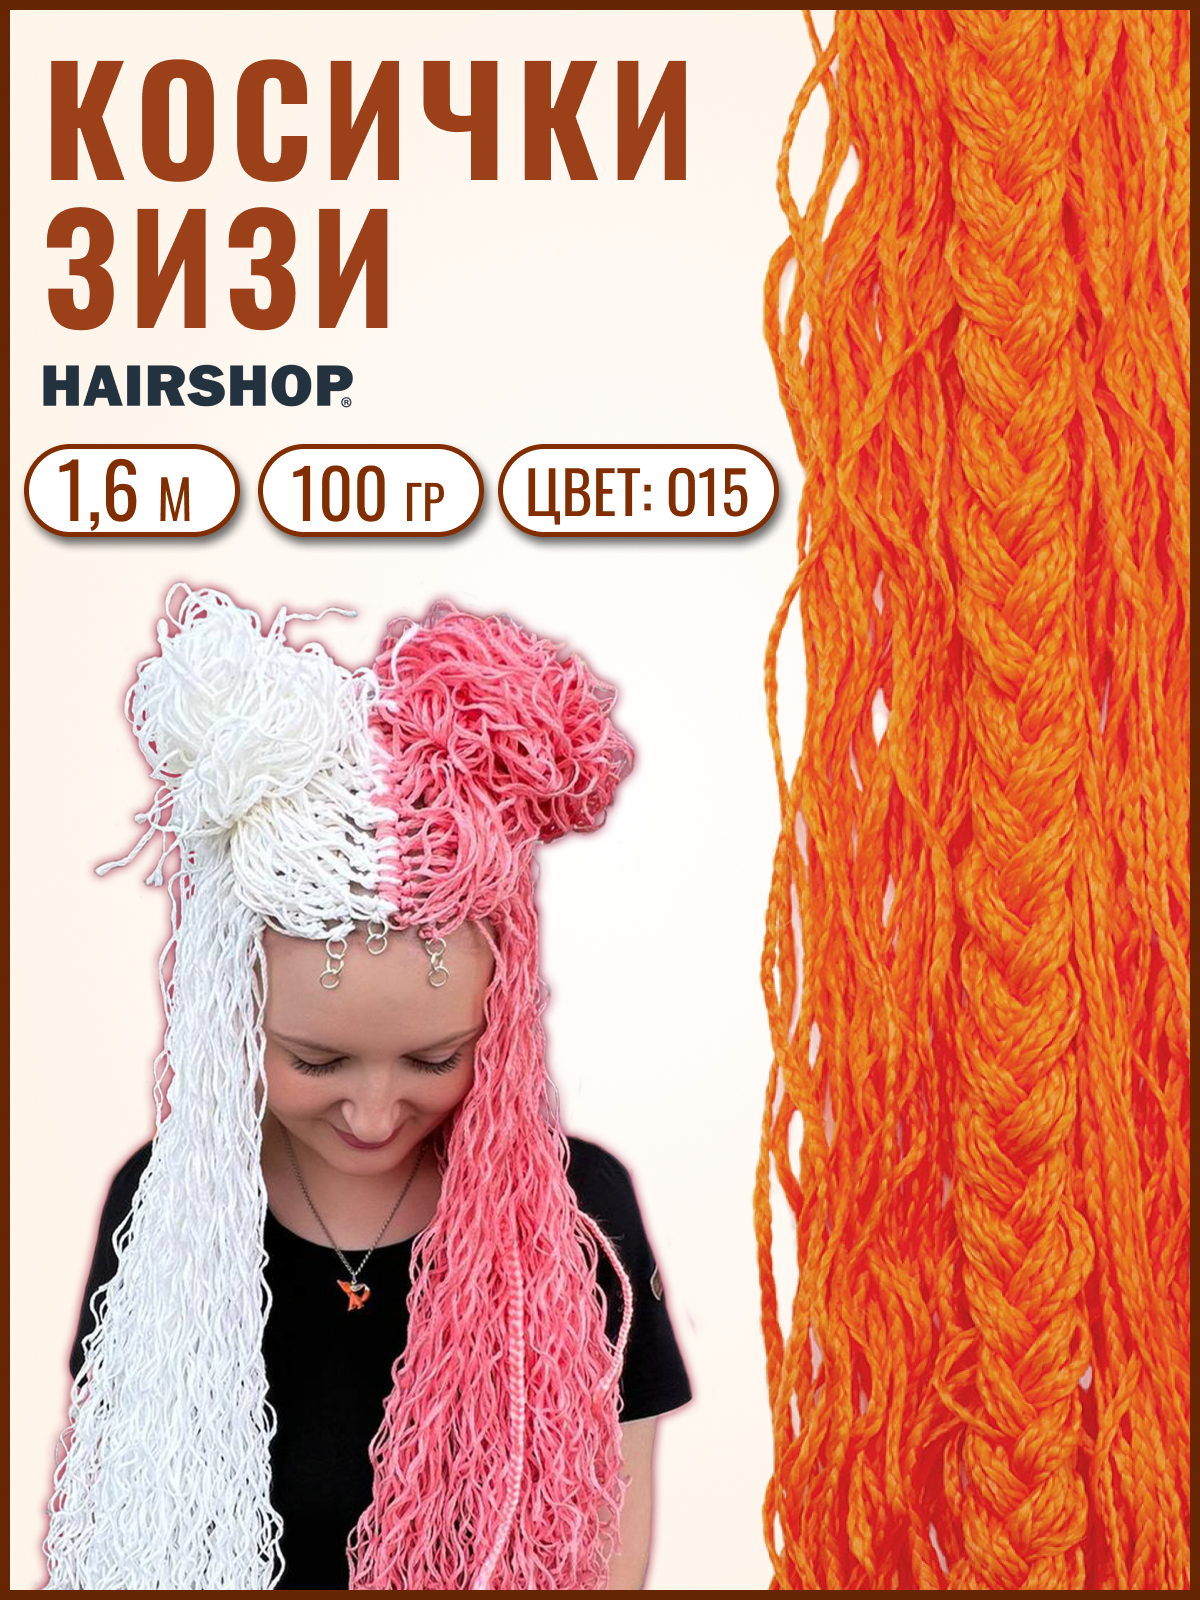 Косички Hairshop Зизи волна О15 Оранжевый косички hairshop зизи градиент волна 1b c14 100г